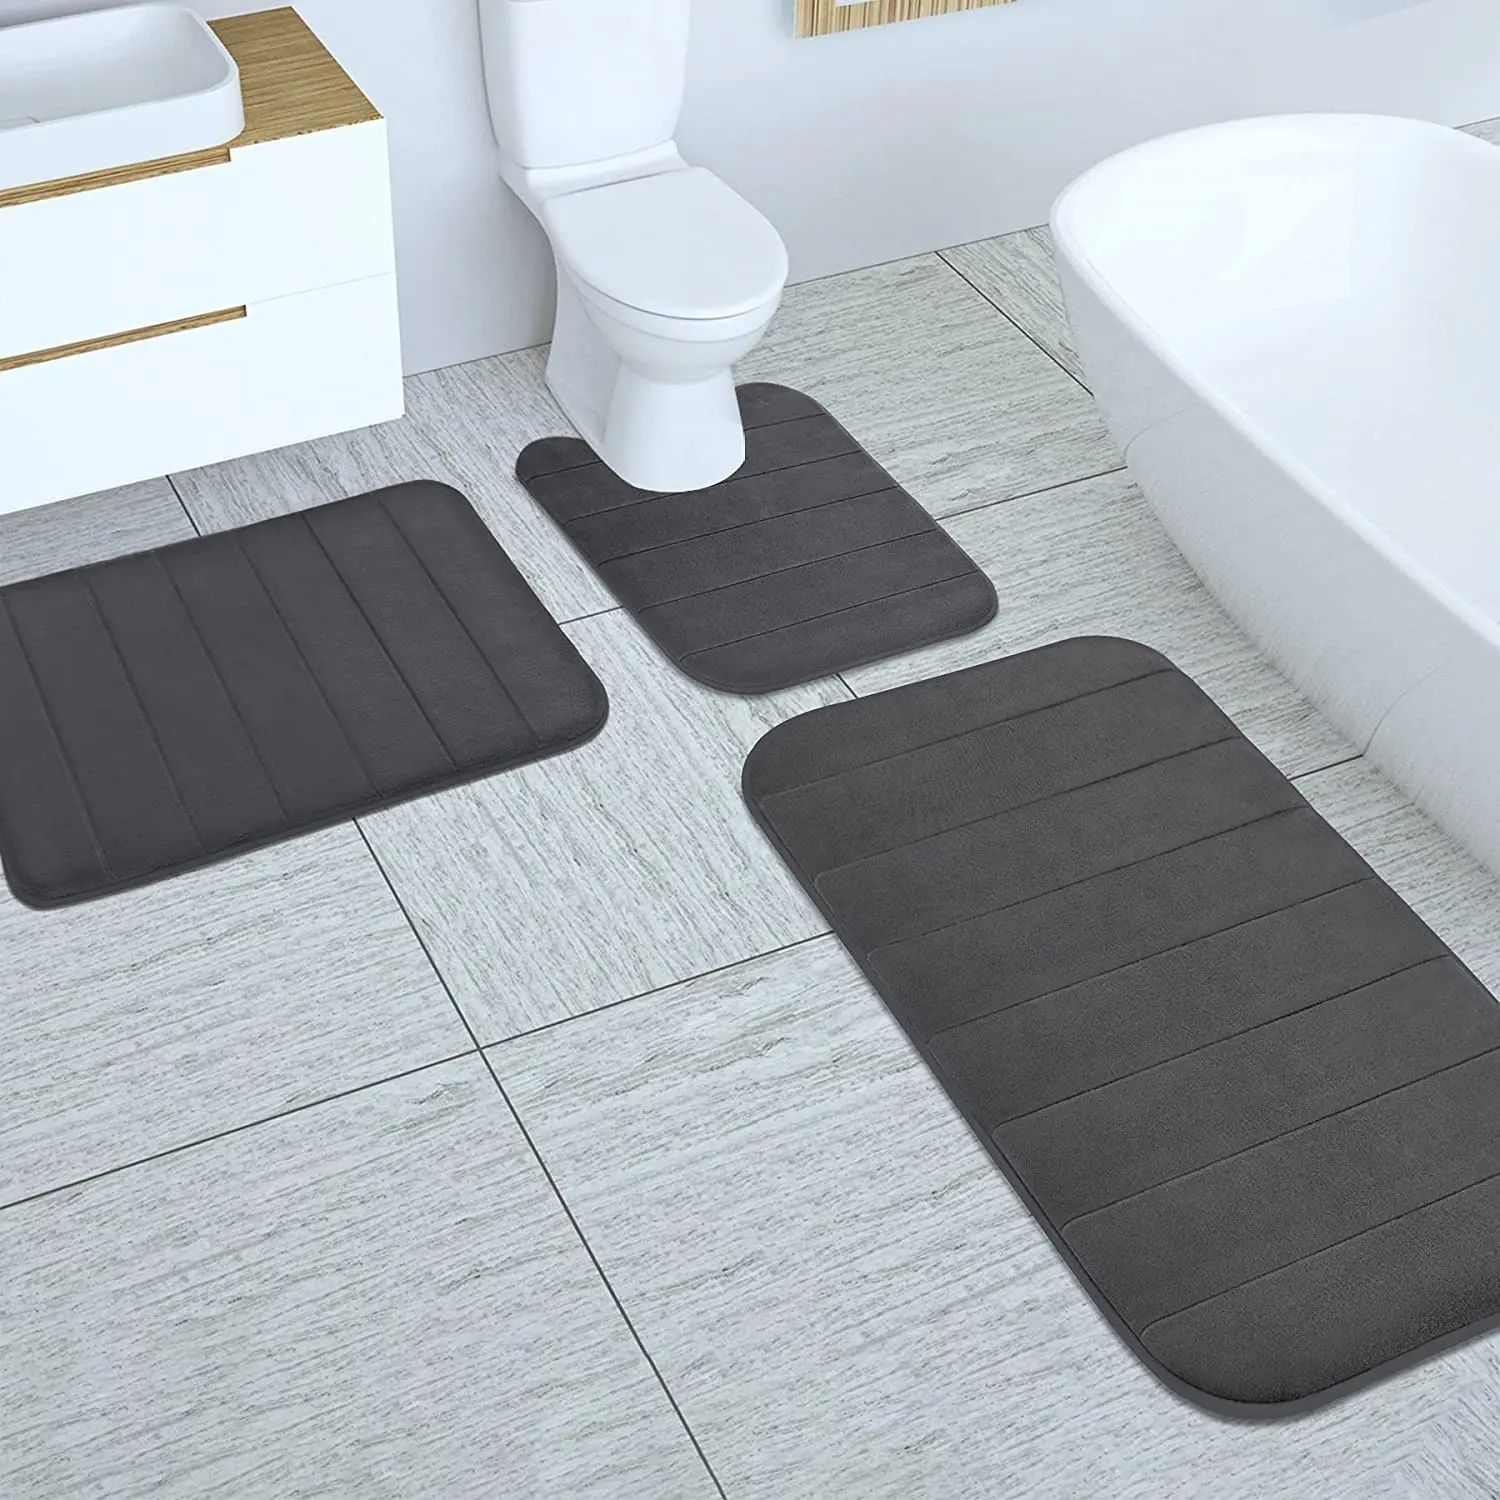 Tapetes para banheiro, conjunto de 3 peças de tapete com espuma de microfibra super absorvente antiderrapante e antiderrapante de pvc